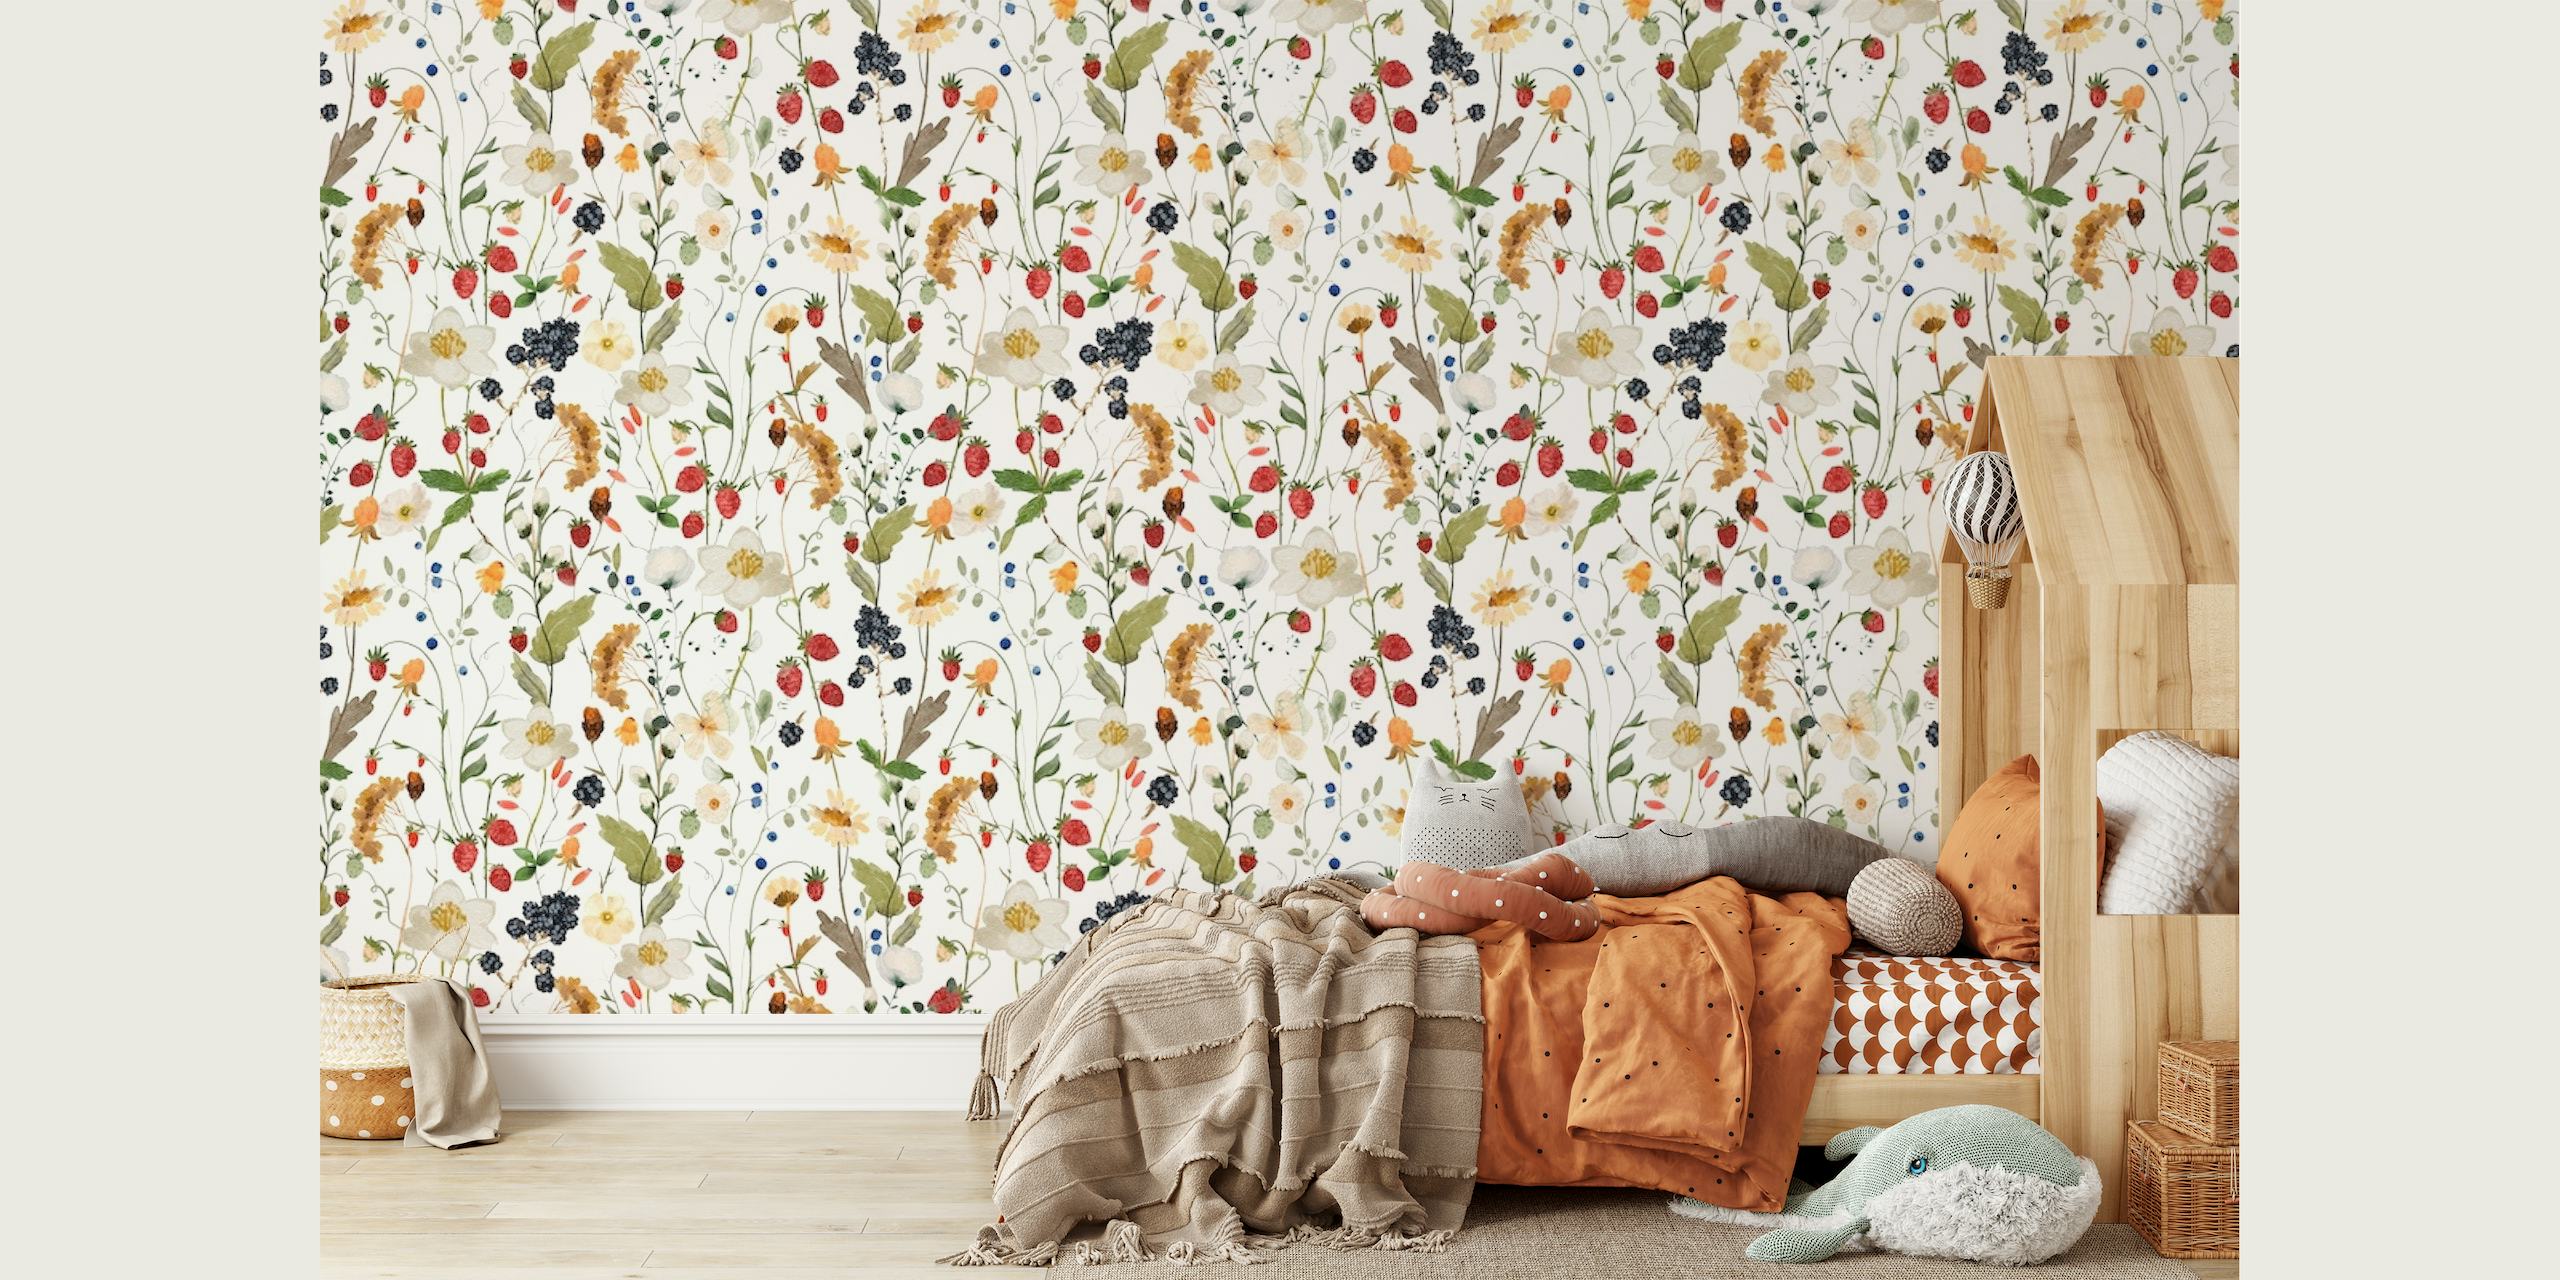 Fotomural vinílico de parede com padrão de morango e flor para decoração de interiores